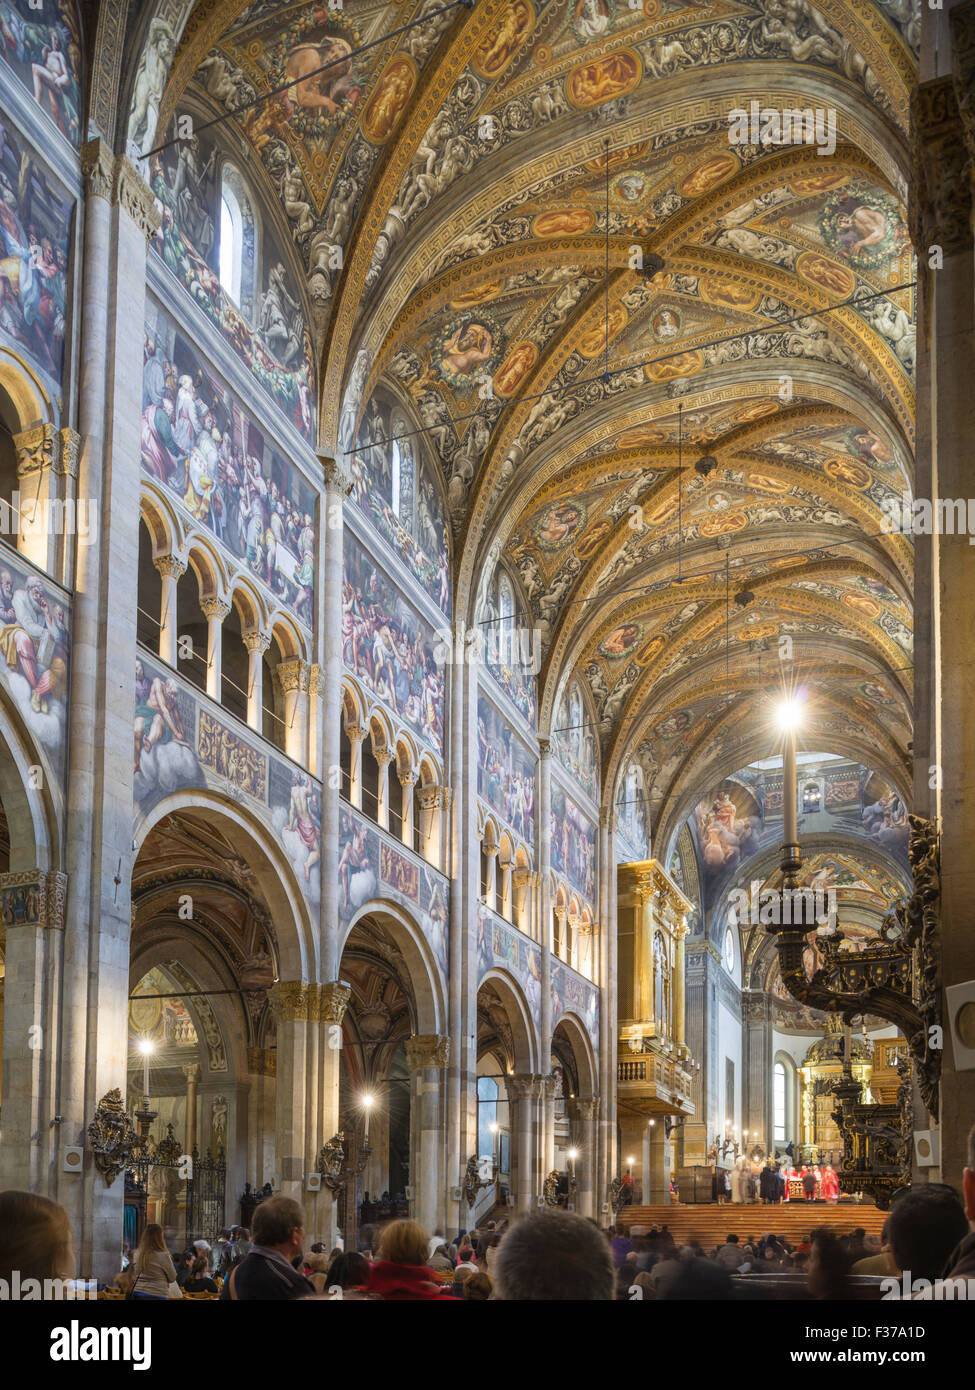 Sainte Messe dans la cathédrale, Parme, emilia-romagna, Italie Banque D'Images